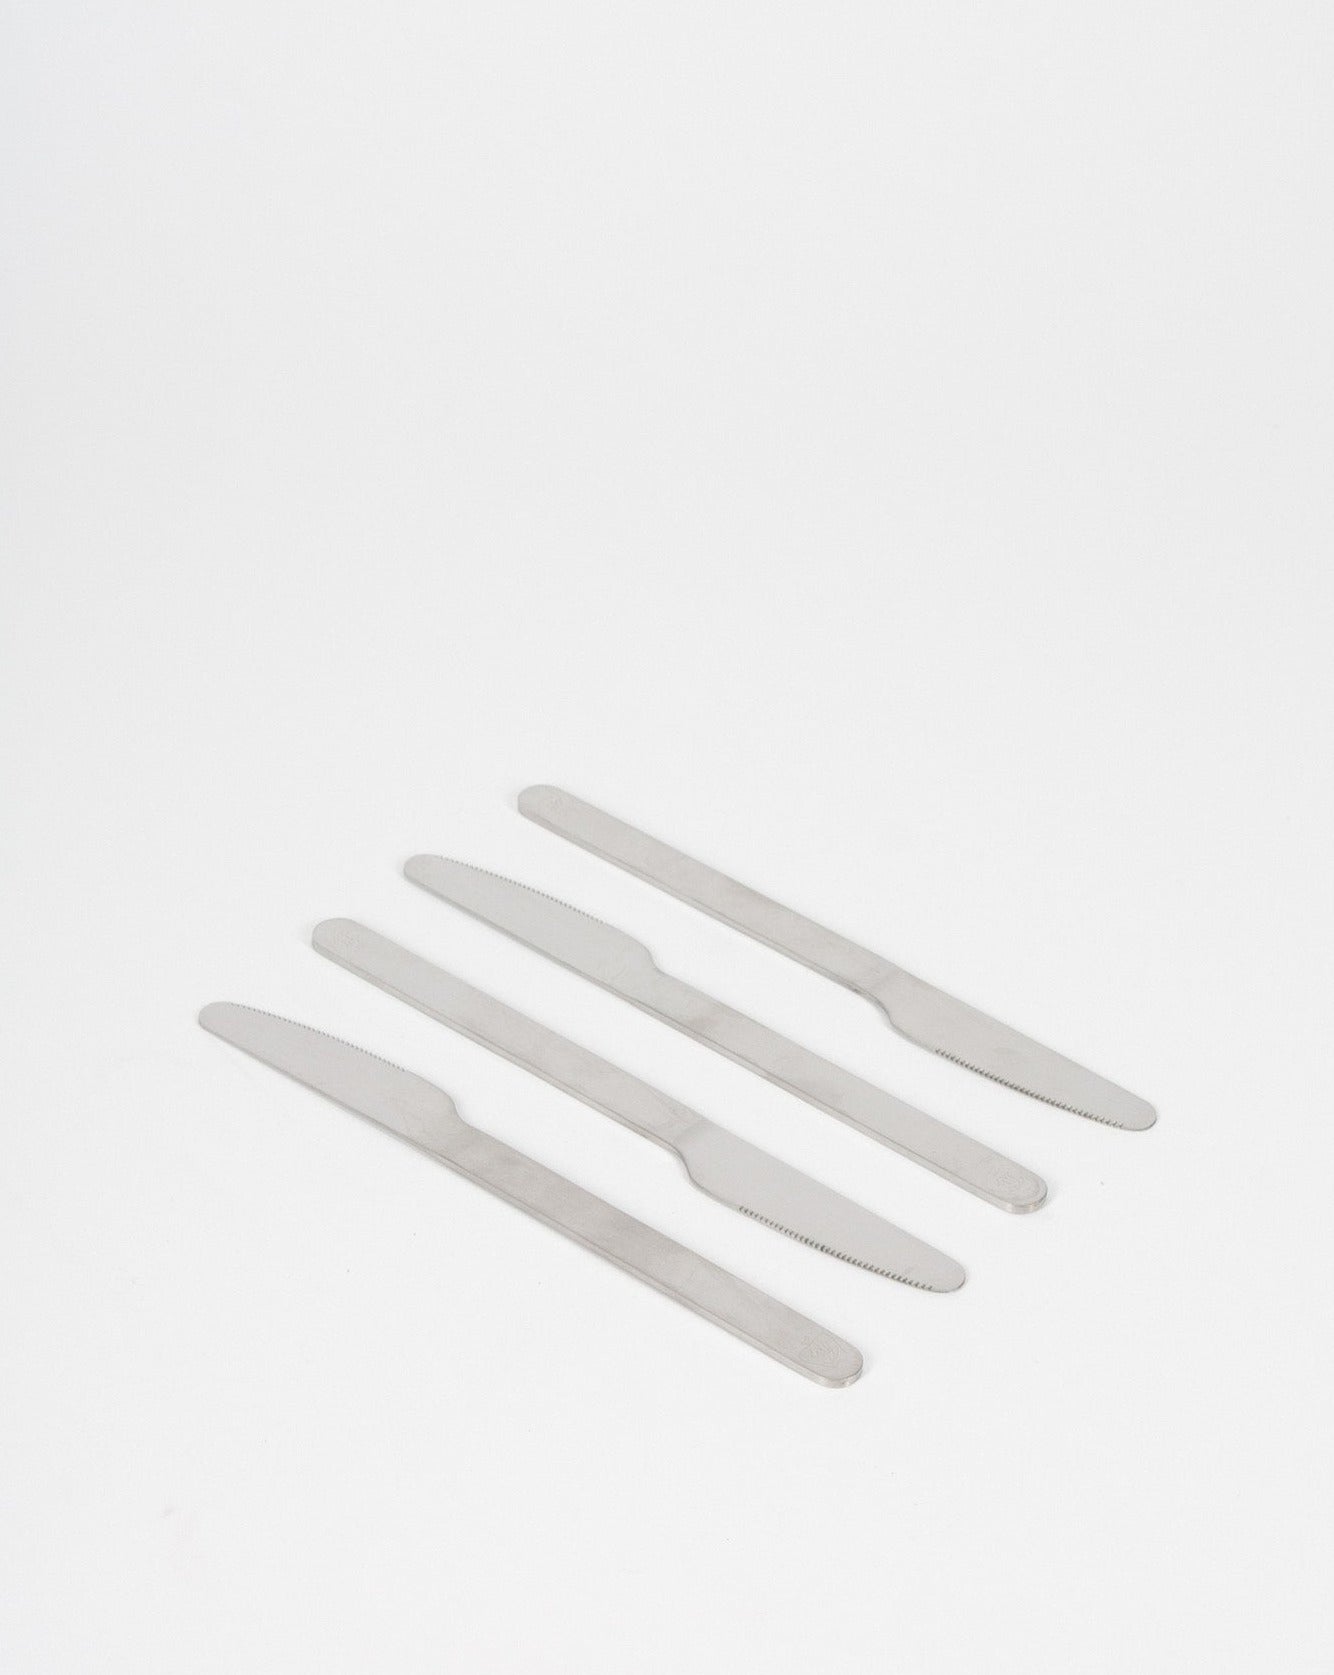 Steel Cutlery - Pick Up - 12 pcs